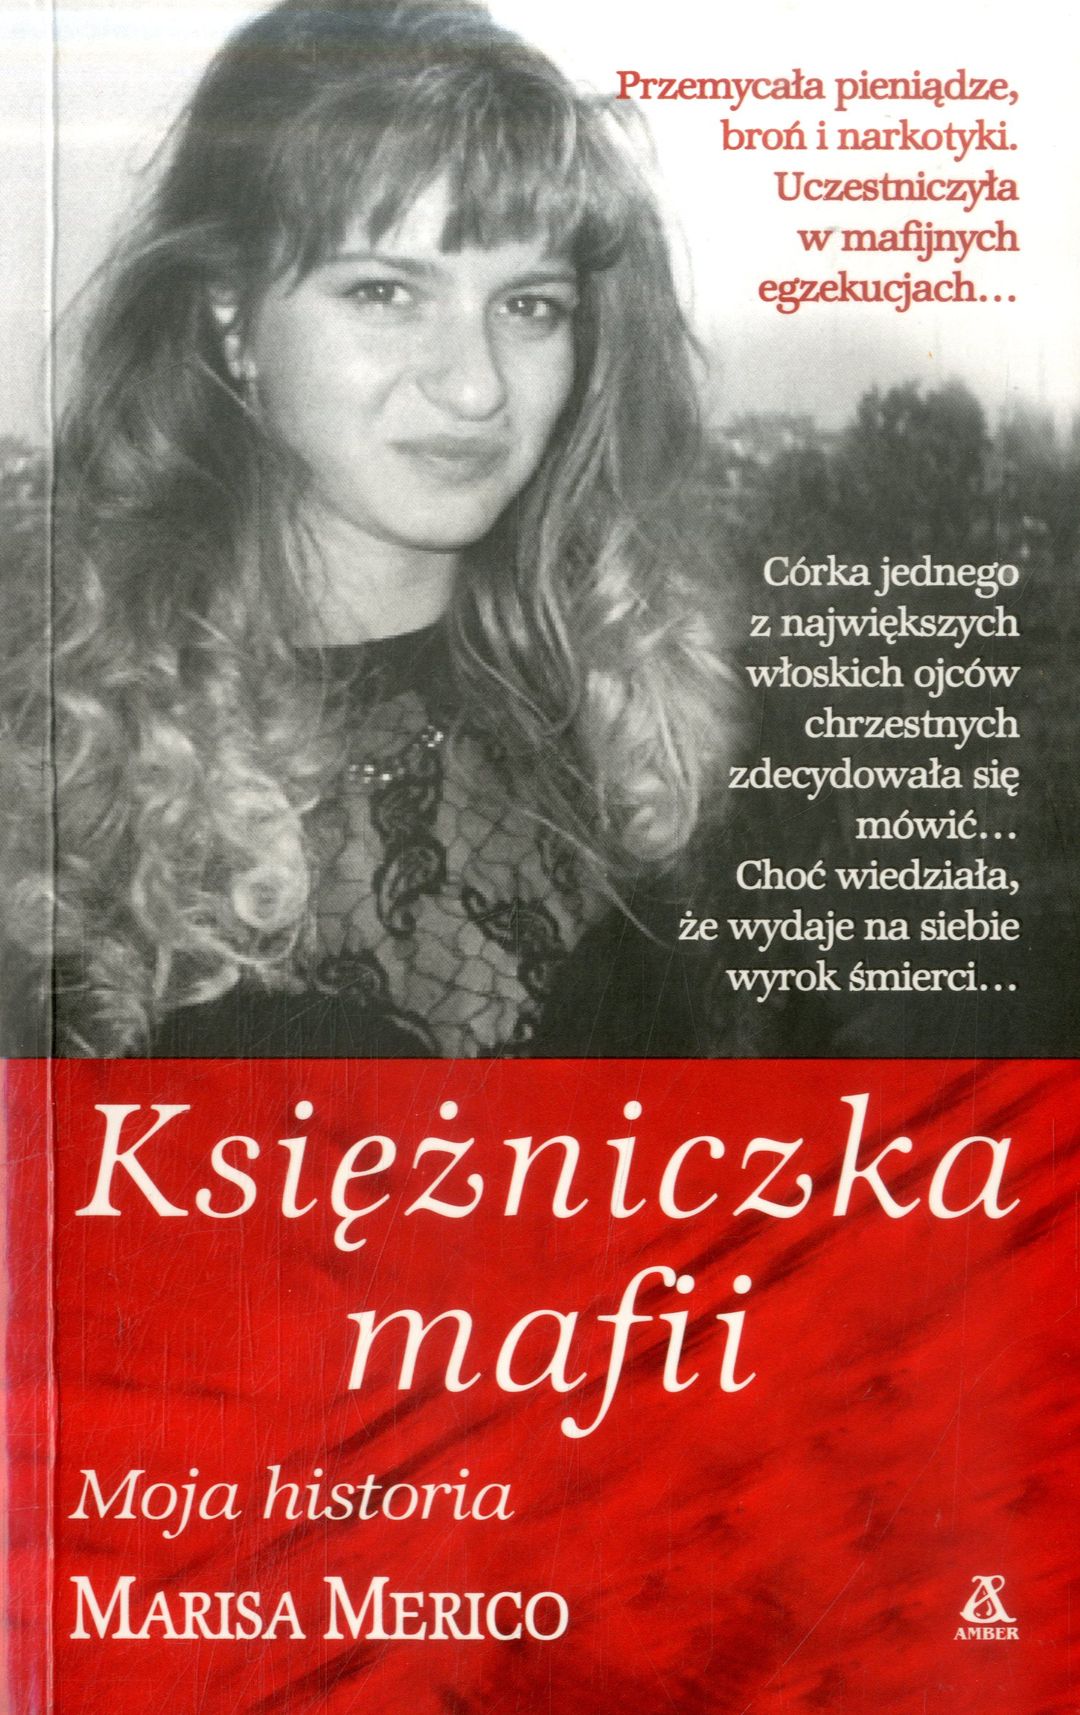 „Księżniczka mafii” Antoinette Giancana - w.bibliotece.pl